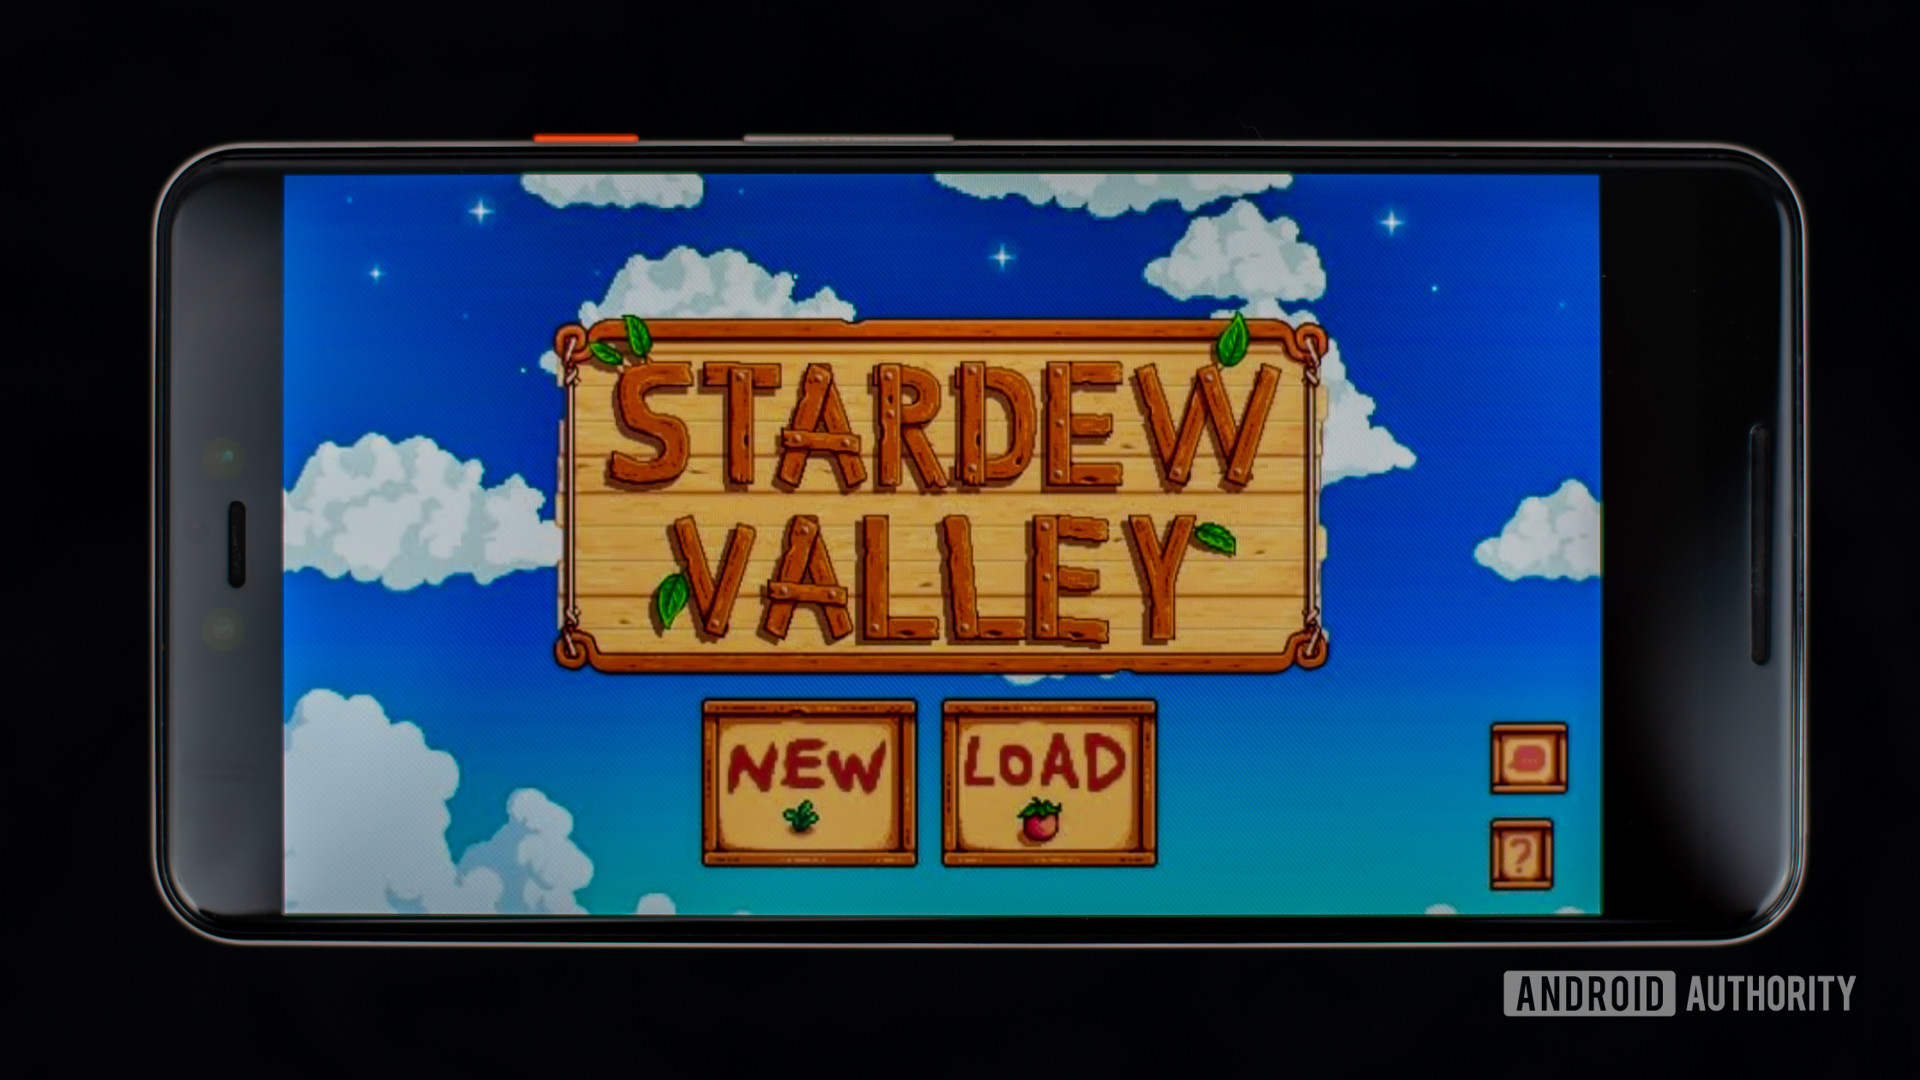 Stardwew Valley игра Stock Photo 2